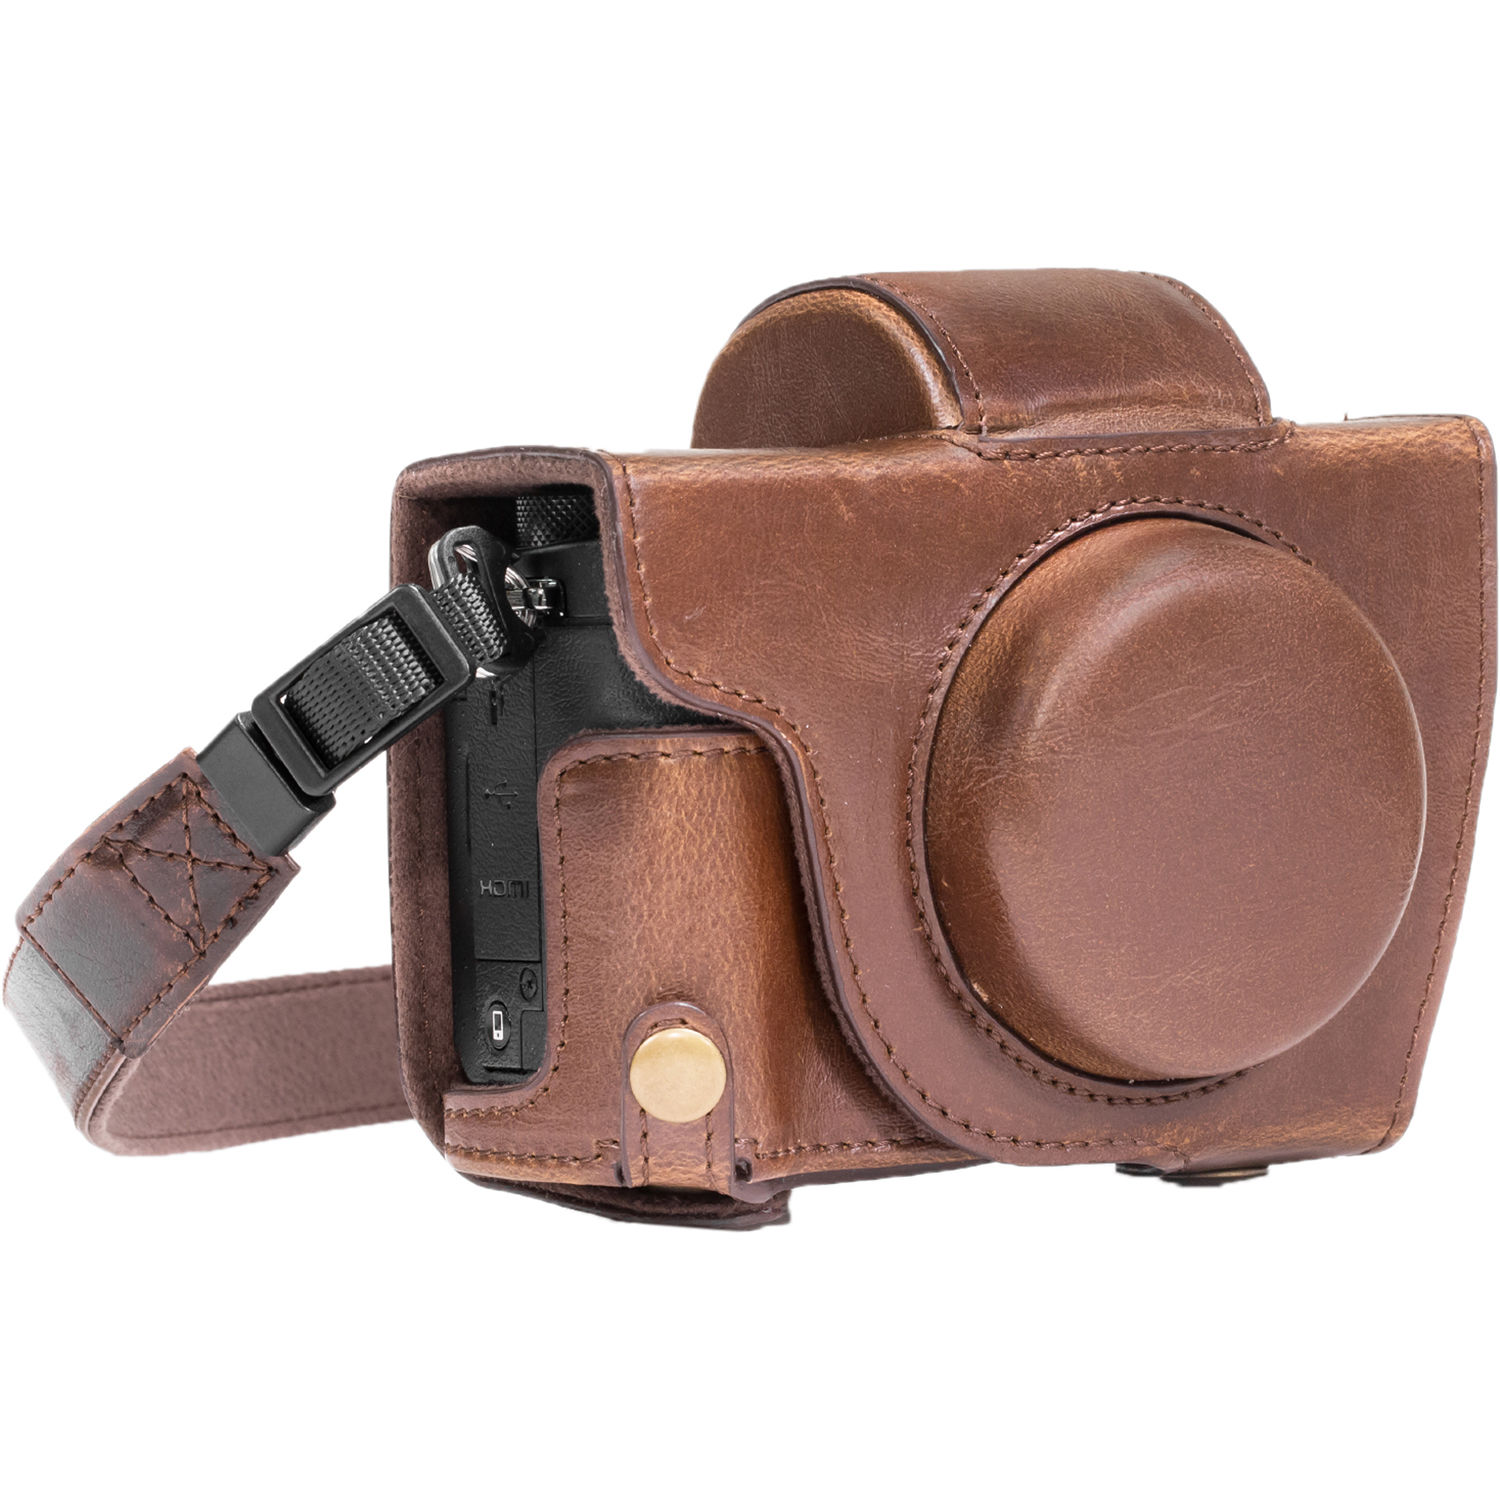 megagear leather camera case